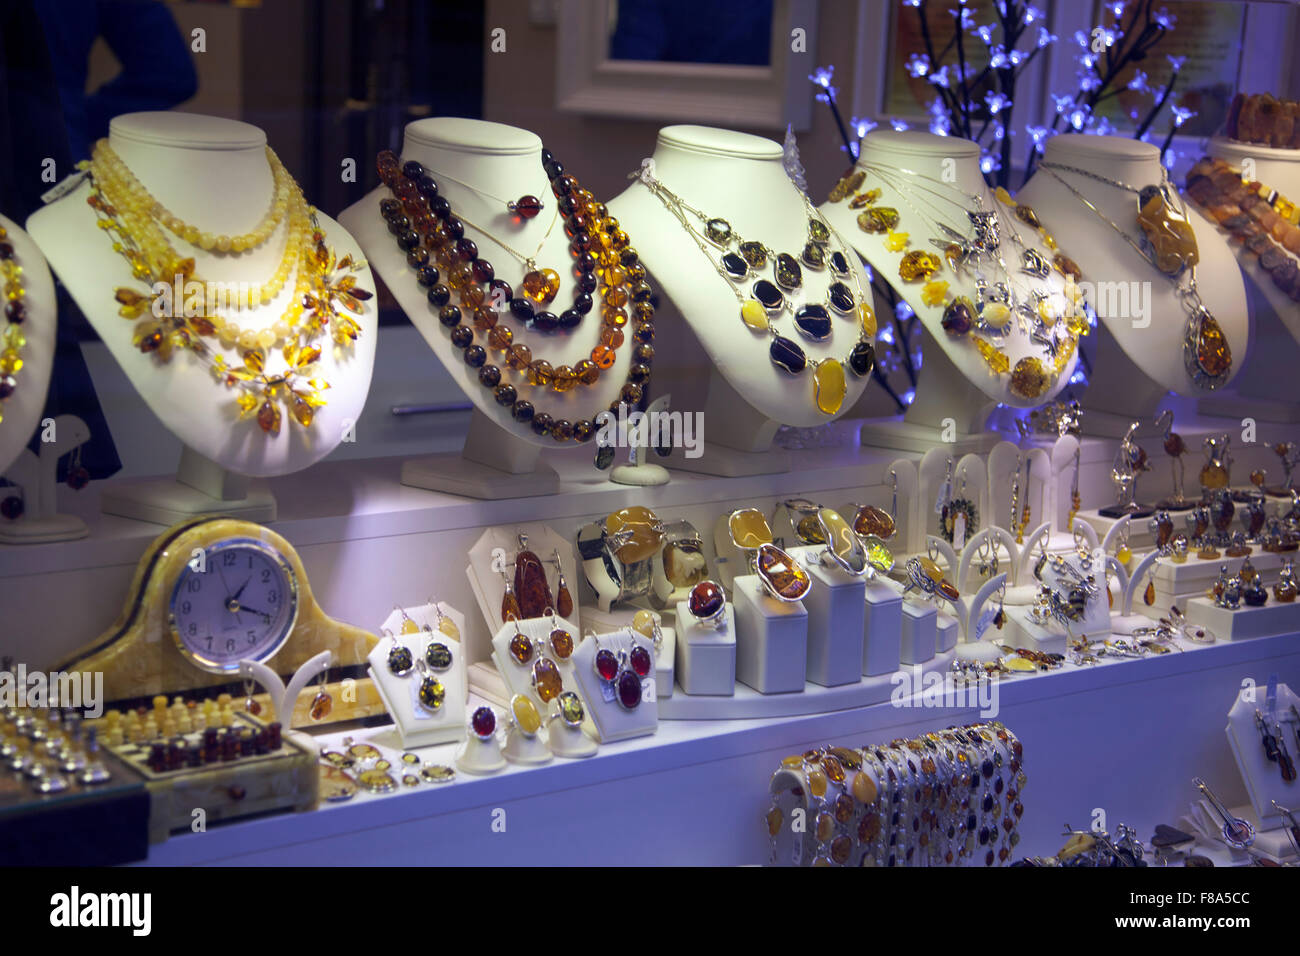 Avec la présentation en magasin bijoux d'ambre et des décorations dans la vieille ville de Varsovie, Pologne Banque D'Images